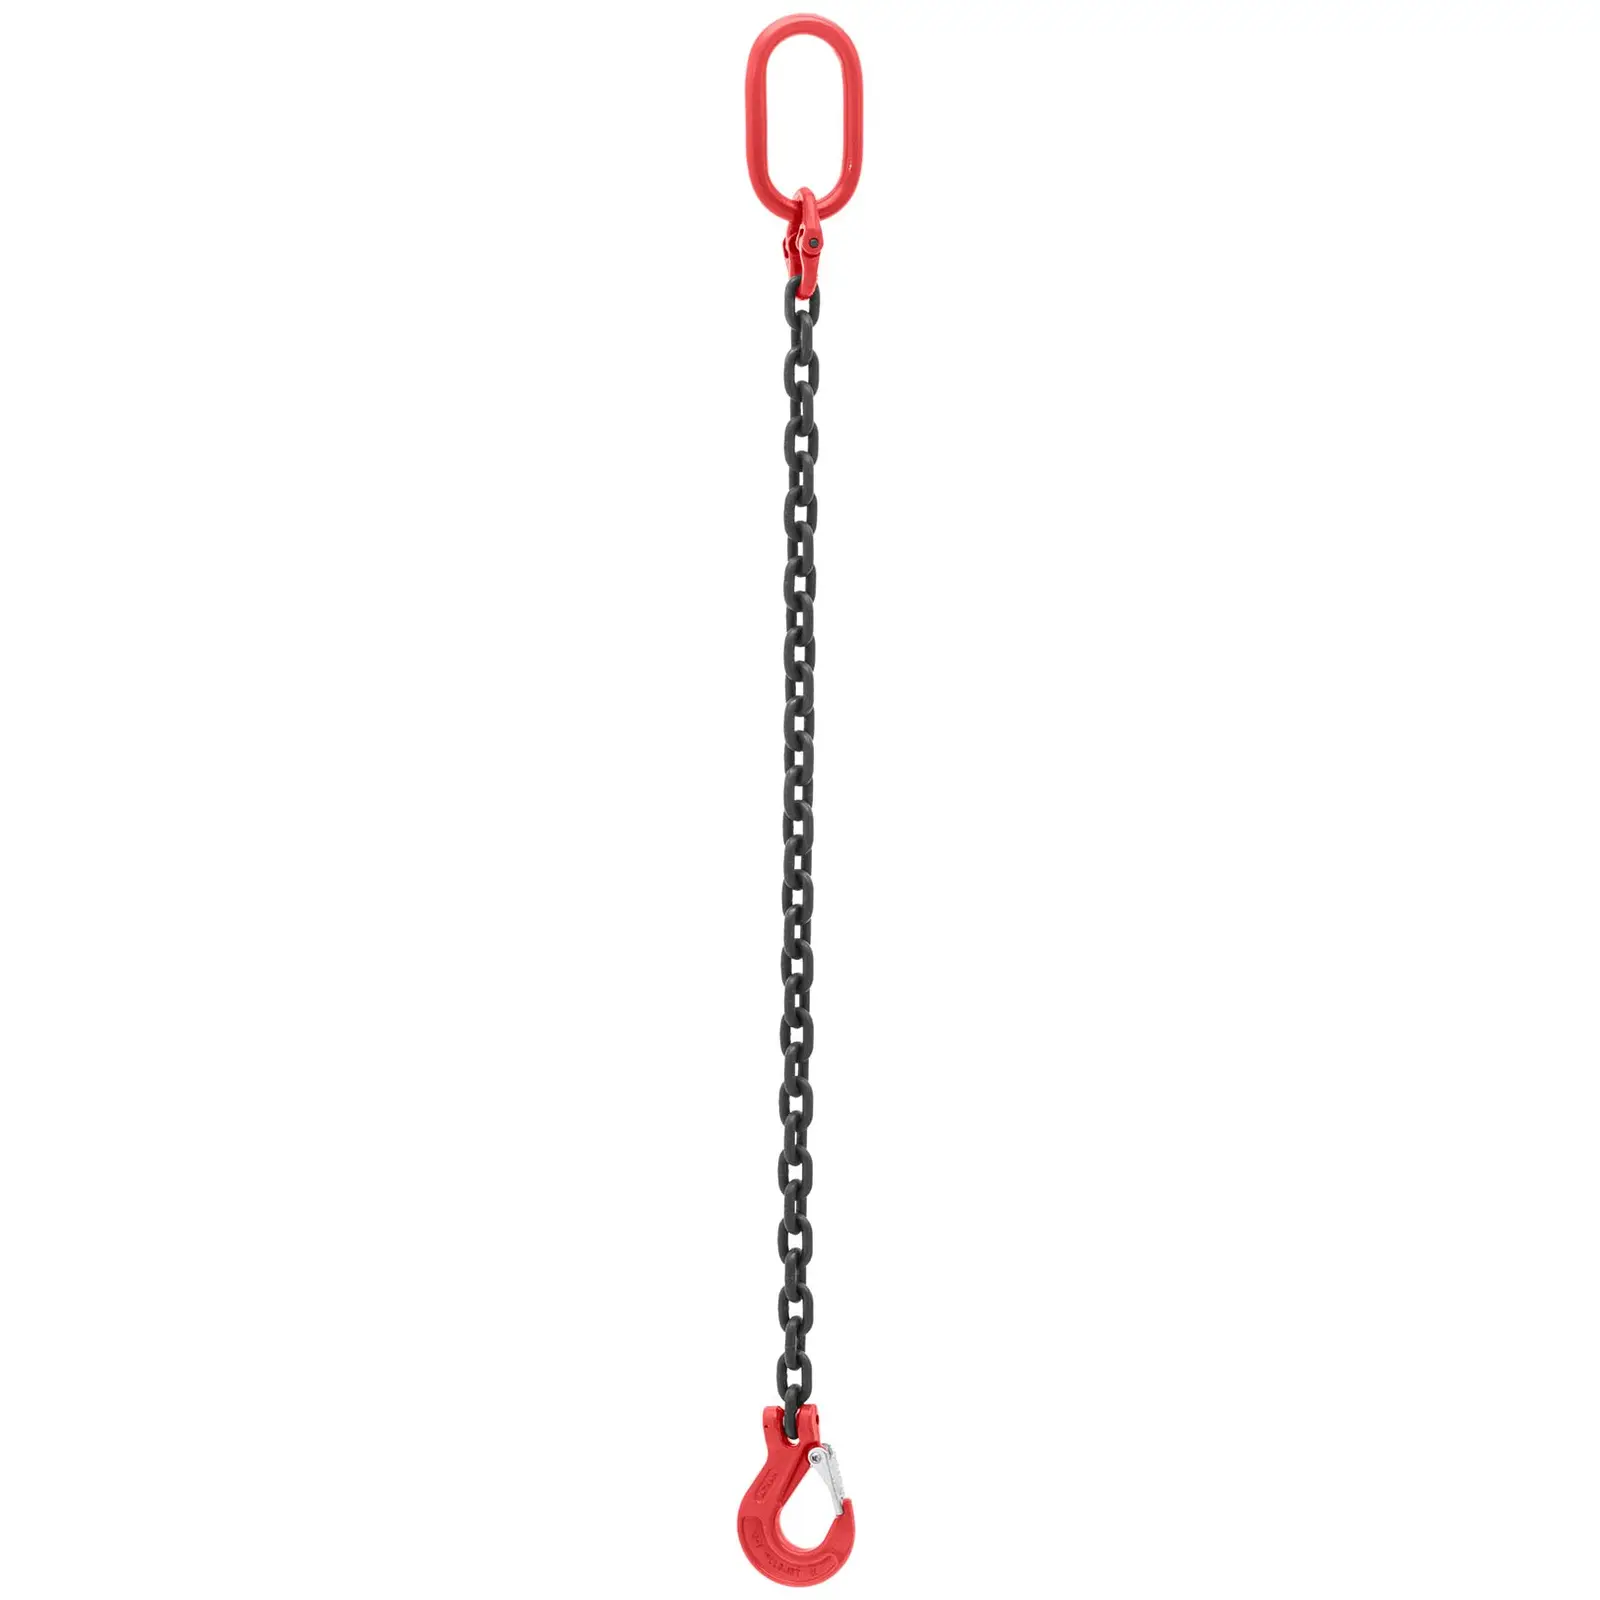 Imbracatura a catena - 3.150 kg - 1 m - Nera, rossa